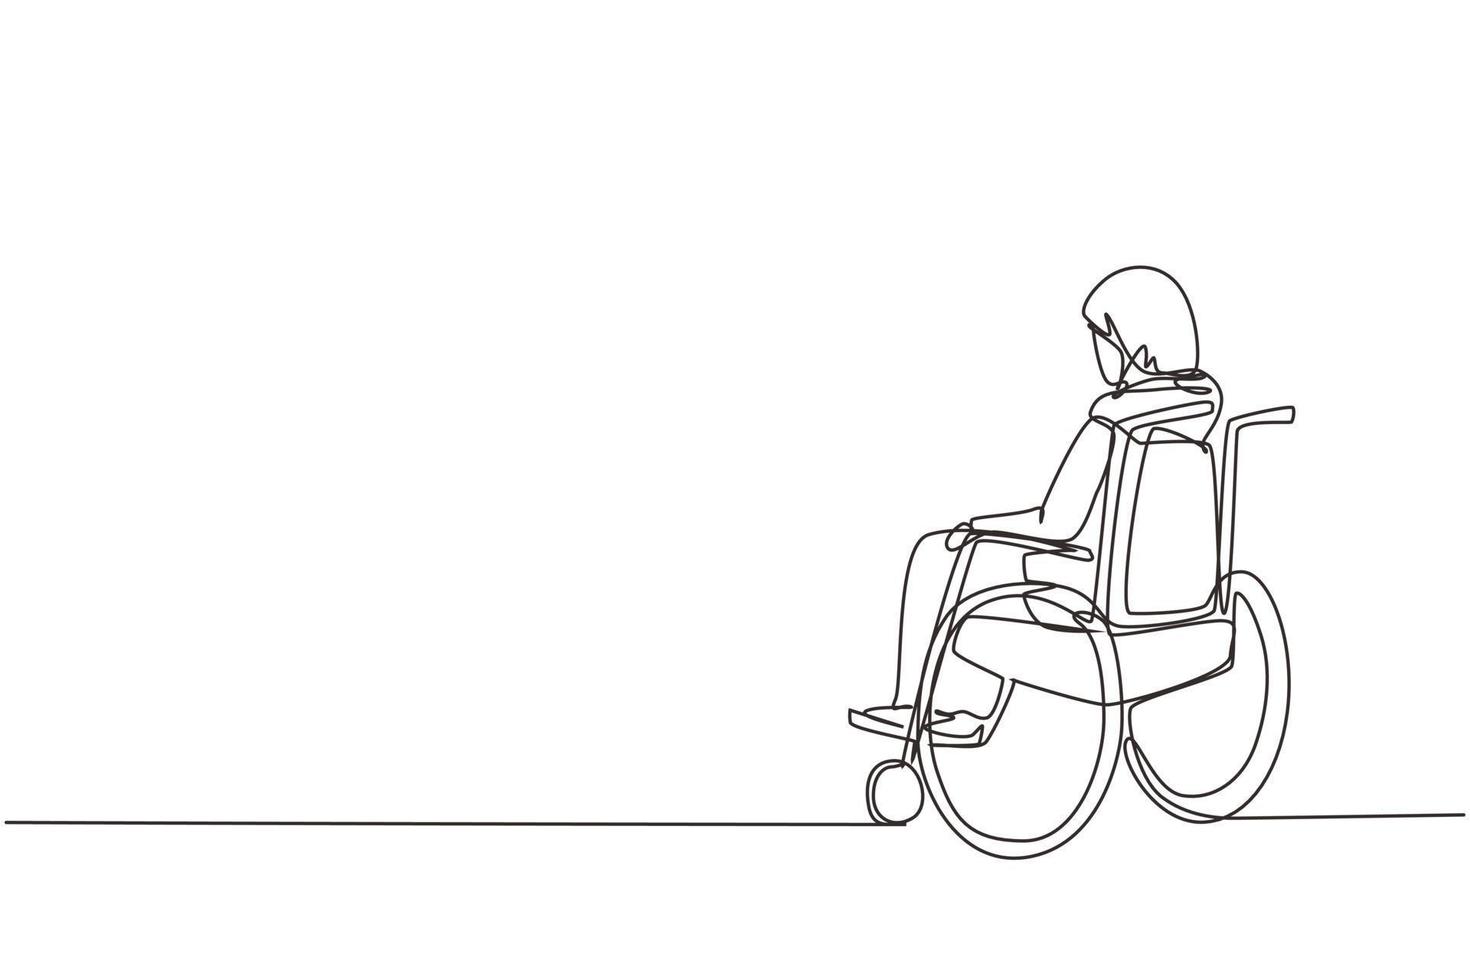 dibujo de una sola línea en la parte trasera de una anciana árabe solitaria sentada en silla de ruedas, mirando las hojas secas de otoño distantes. solitario, abandonado, desolado, solitario. ilustración de diseño de vector de línea continua